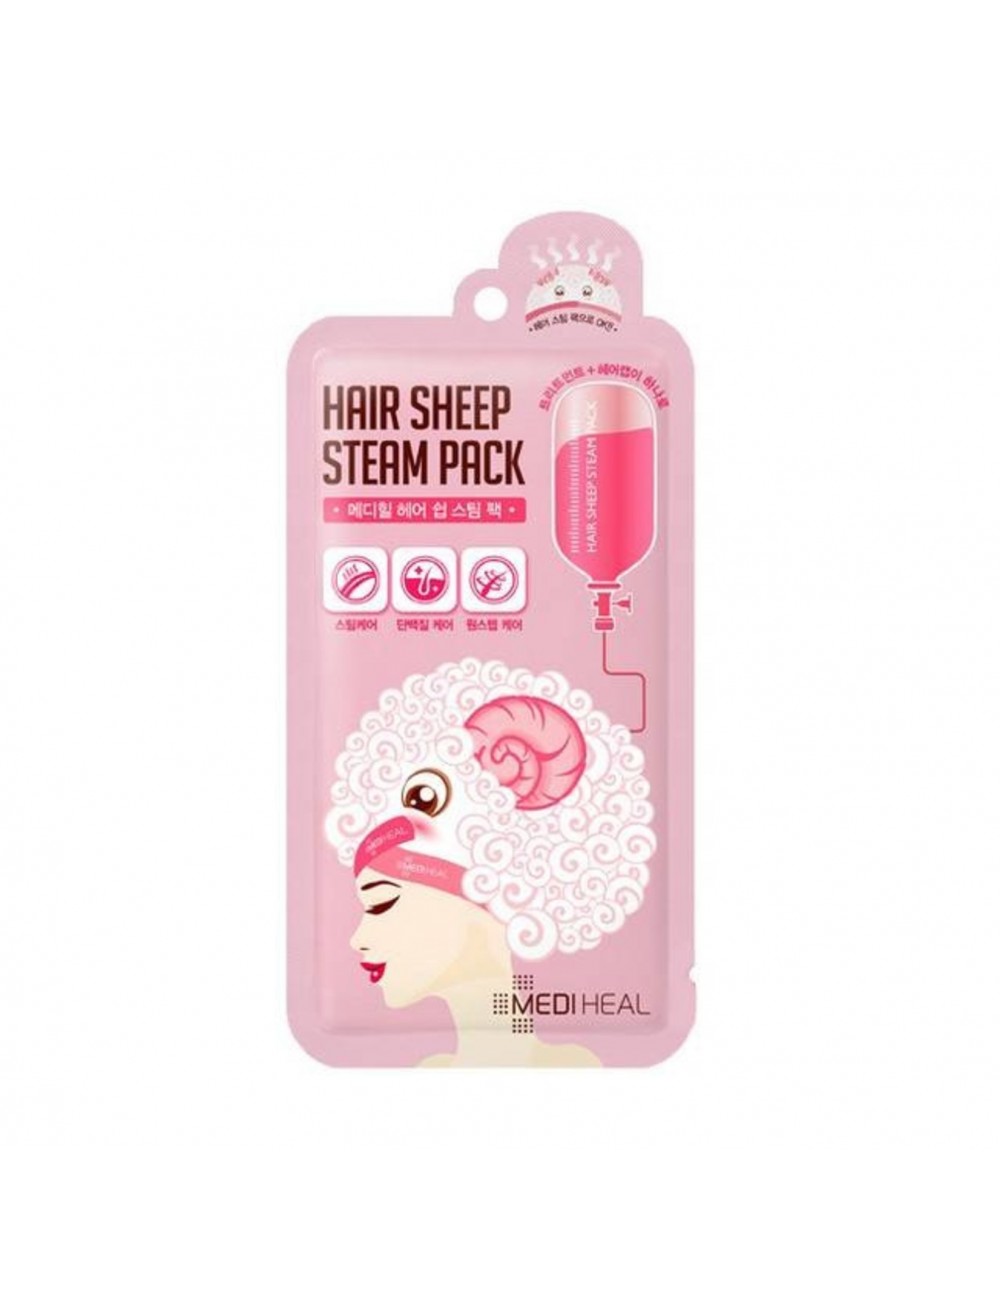 Cabello al mejor precio: Mediheal Hair Sheep Steam Pack - Mascarilla capilar pelo dañado de MEDIHEAL en Skin Thinks - 